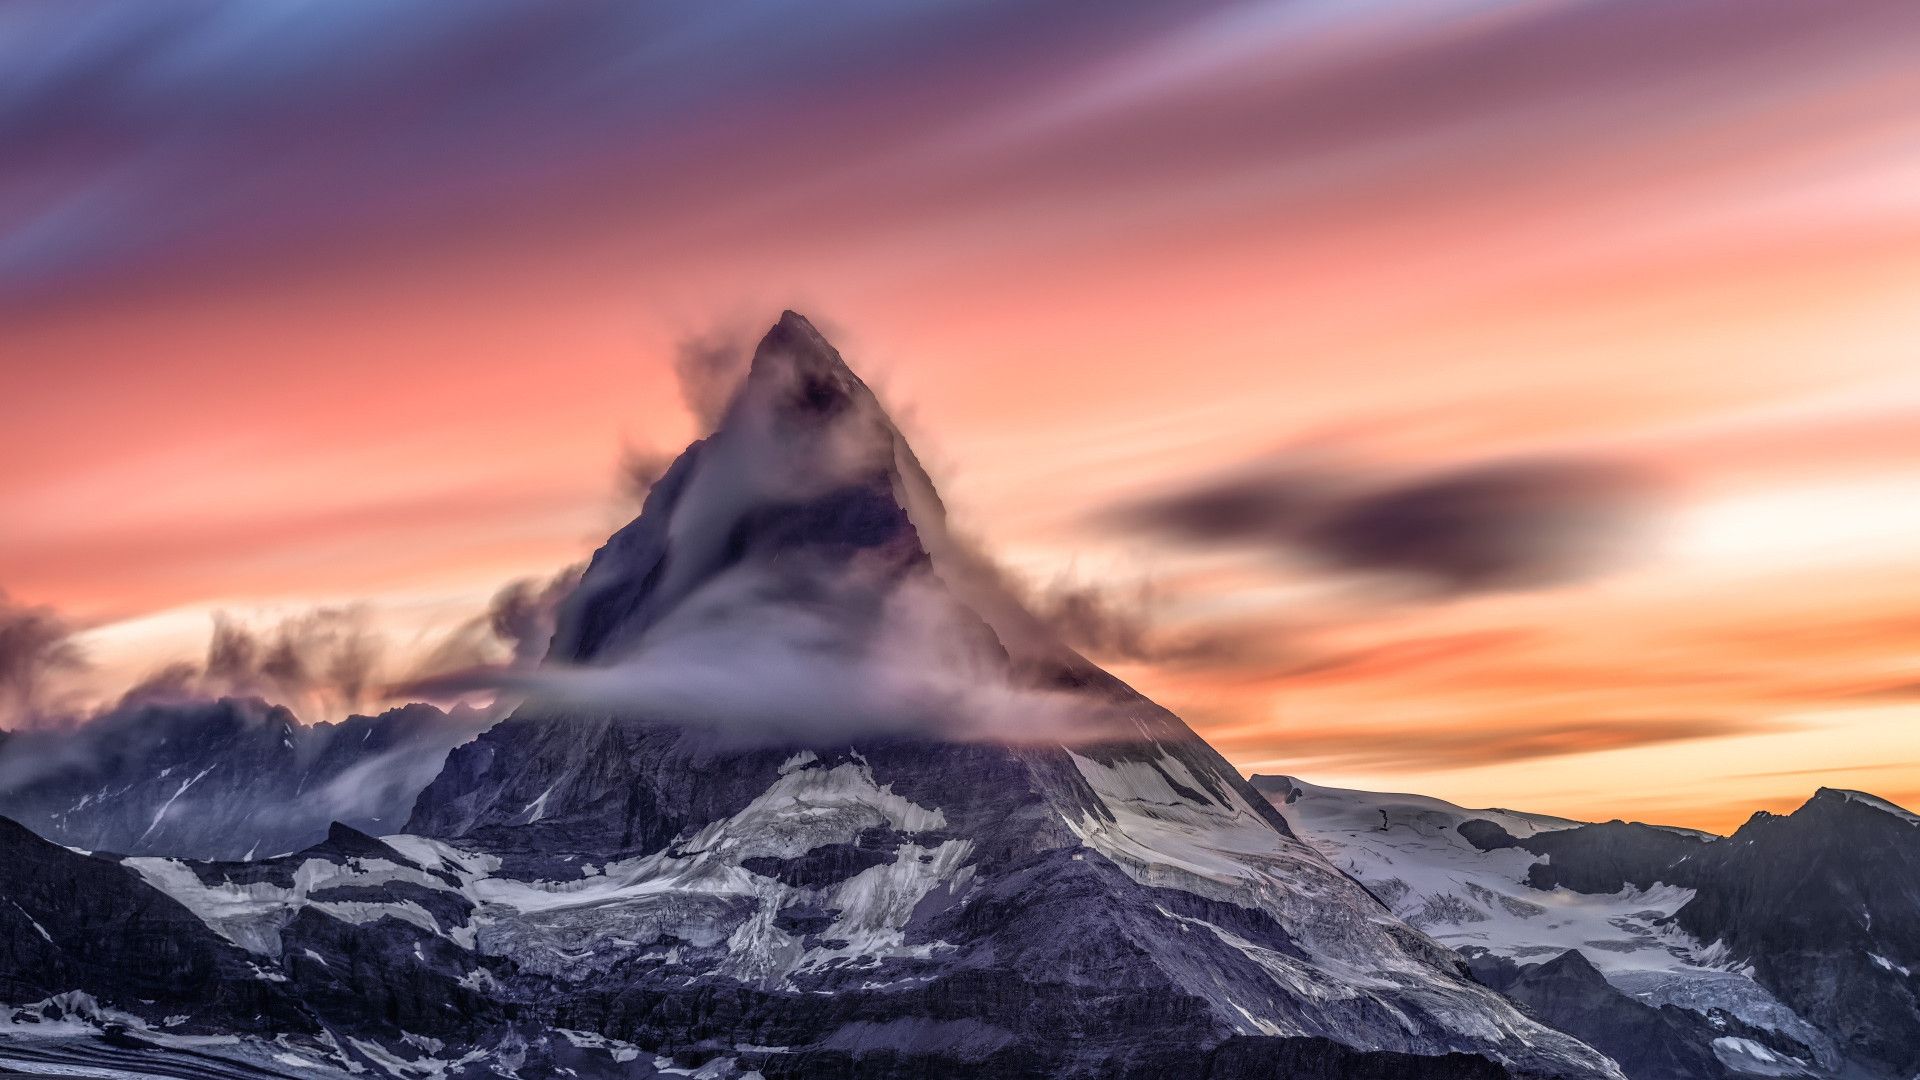 Download wallpaper: Matterhorn mountain from Alps 1920x1080